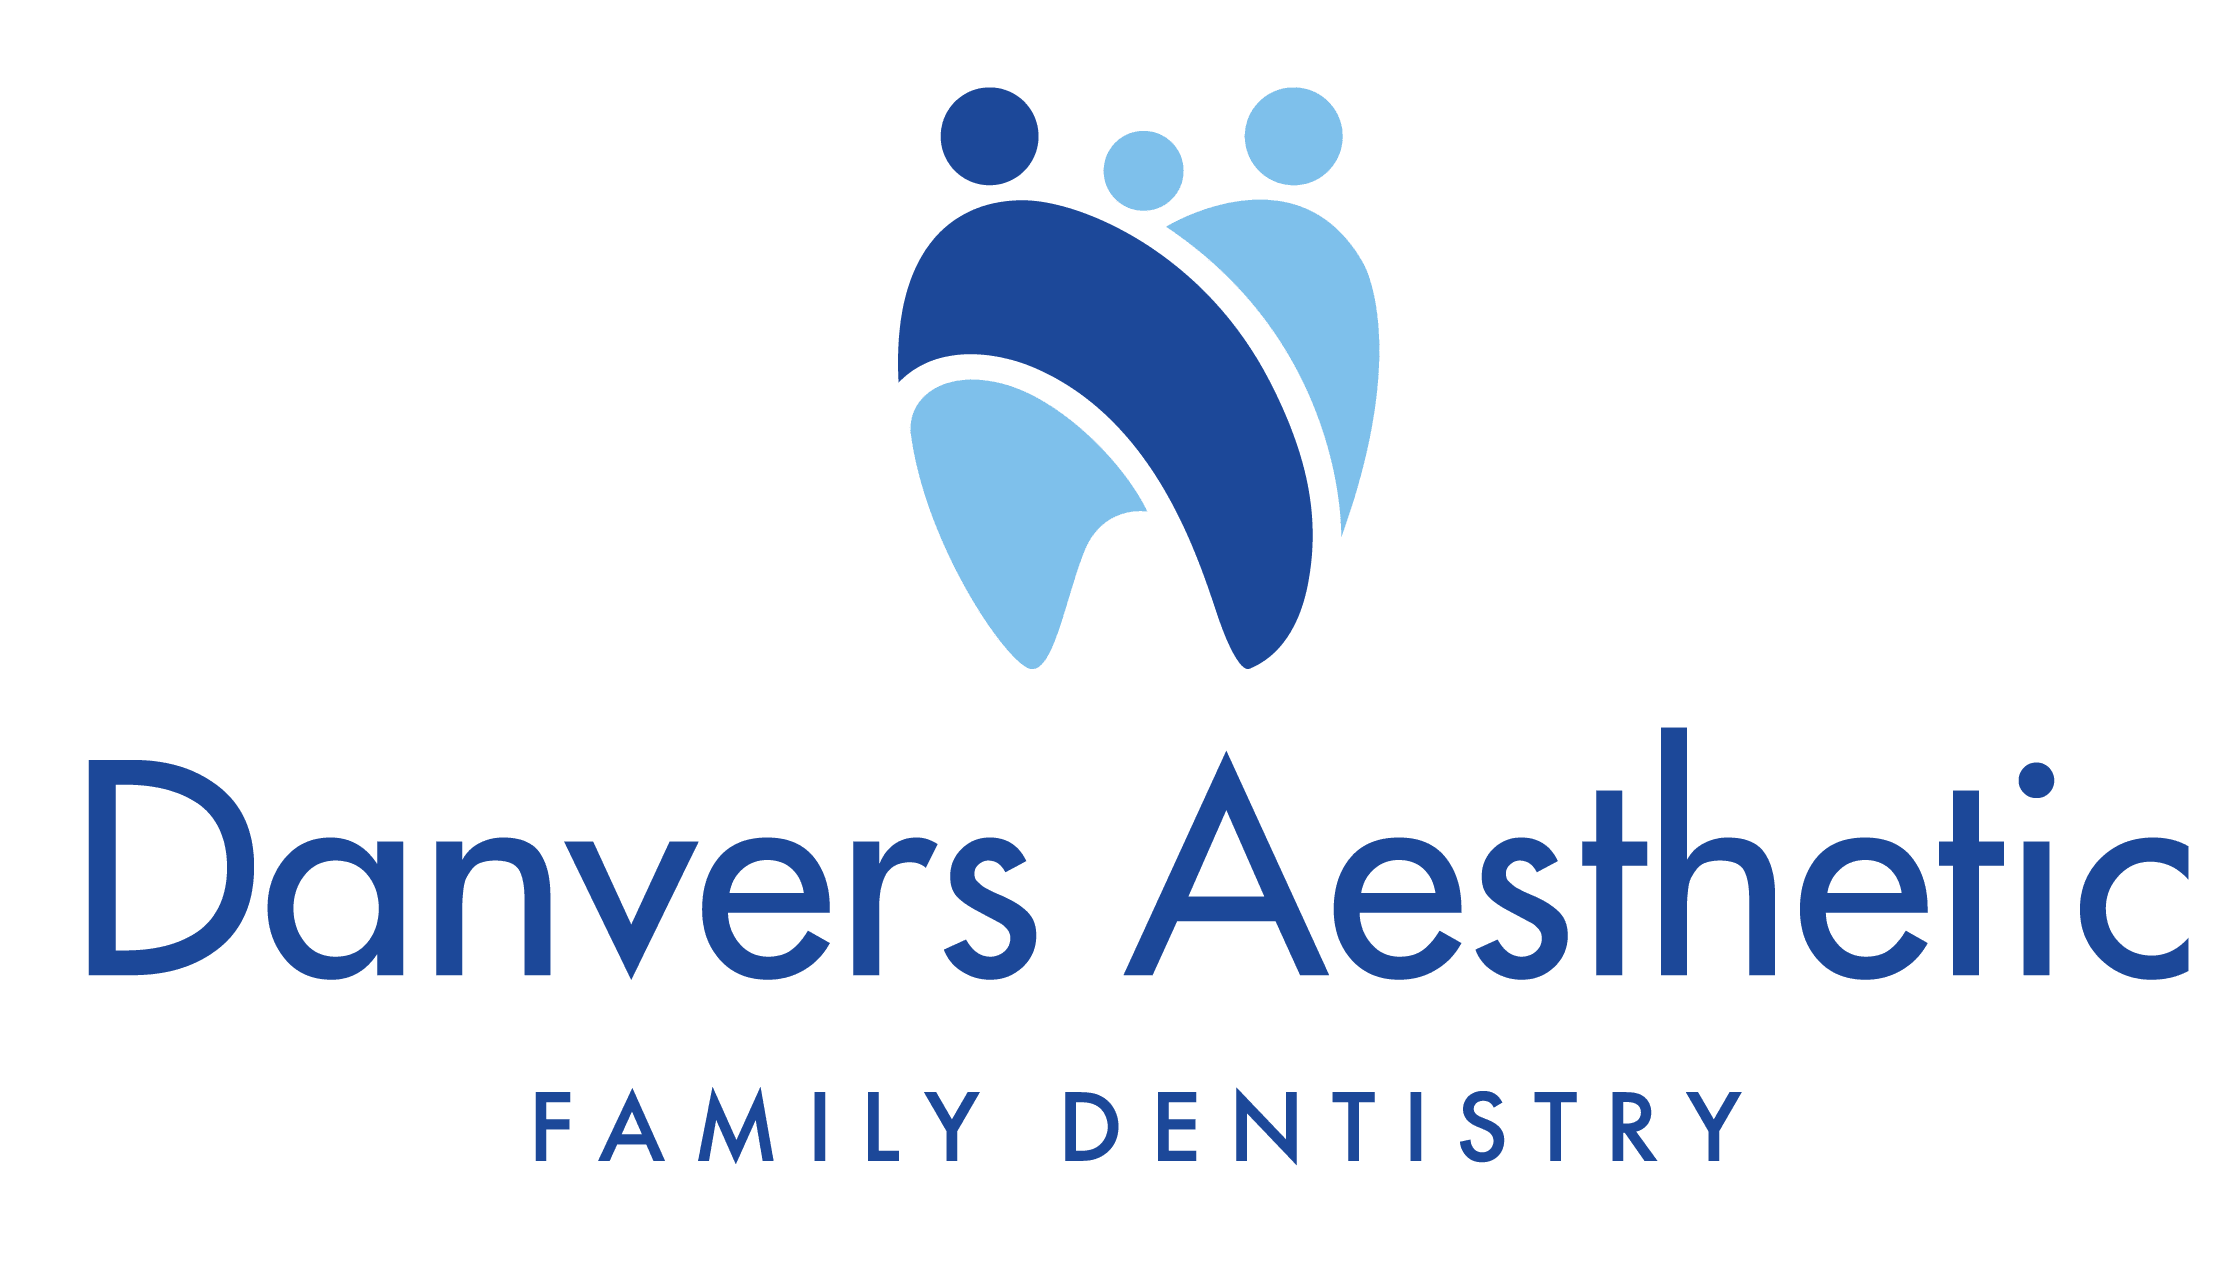 Danvers Aesthetic Family Dentistry Logo